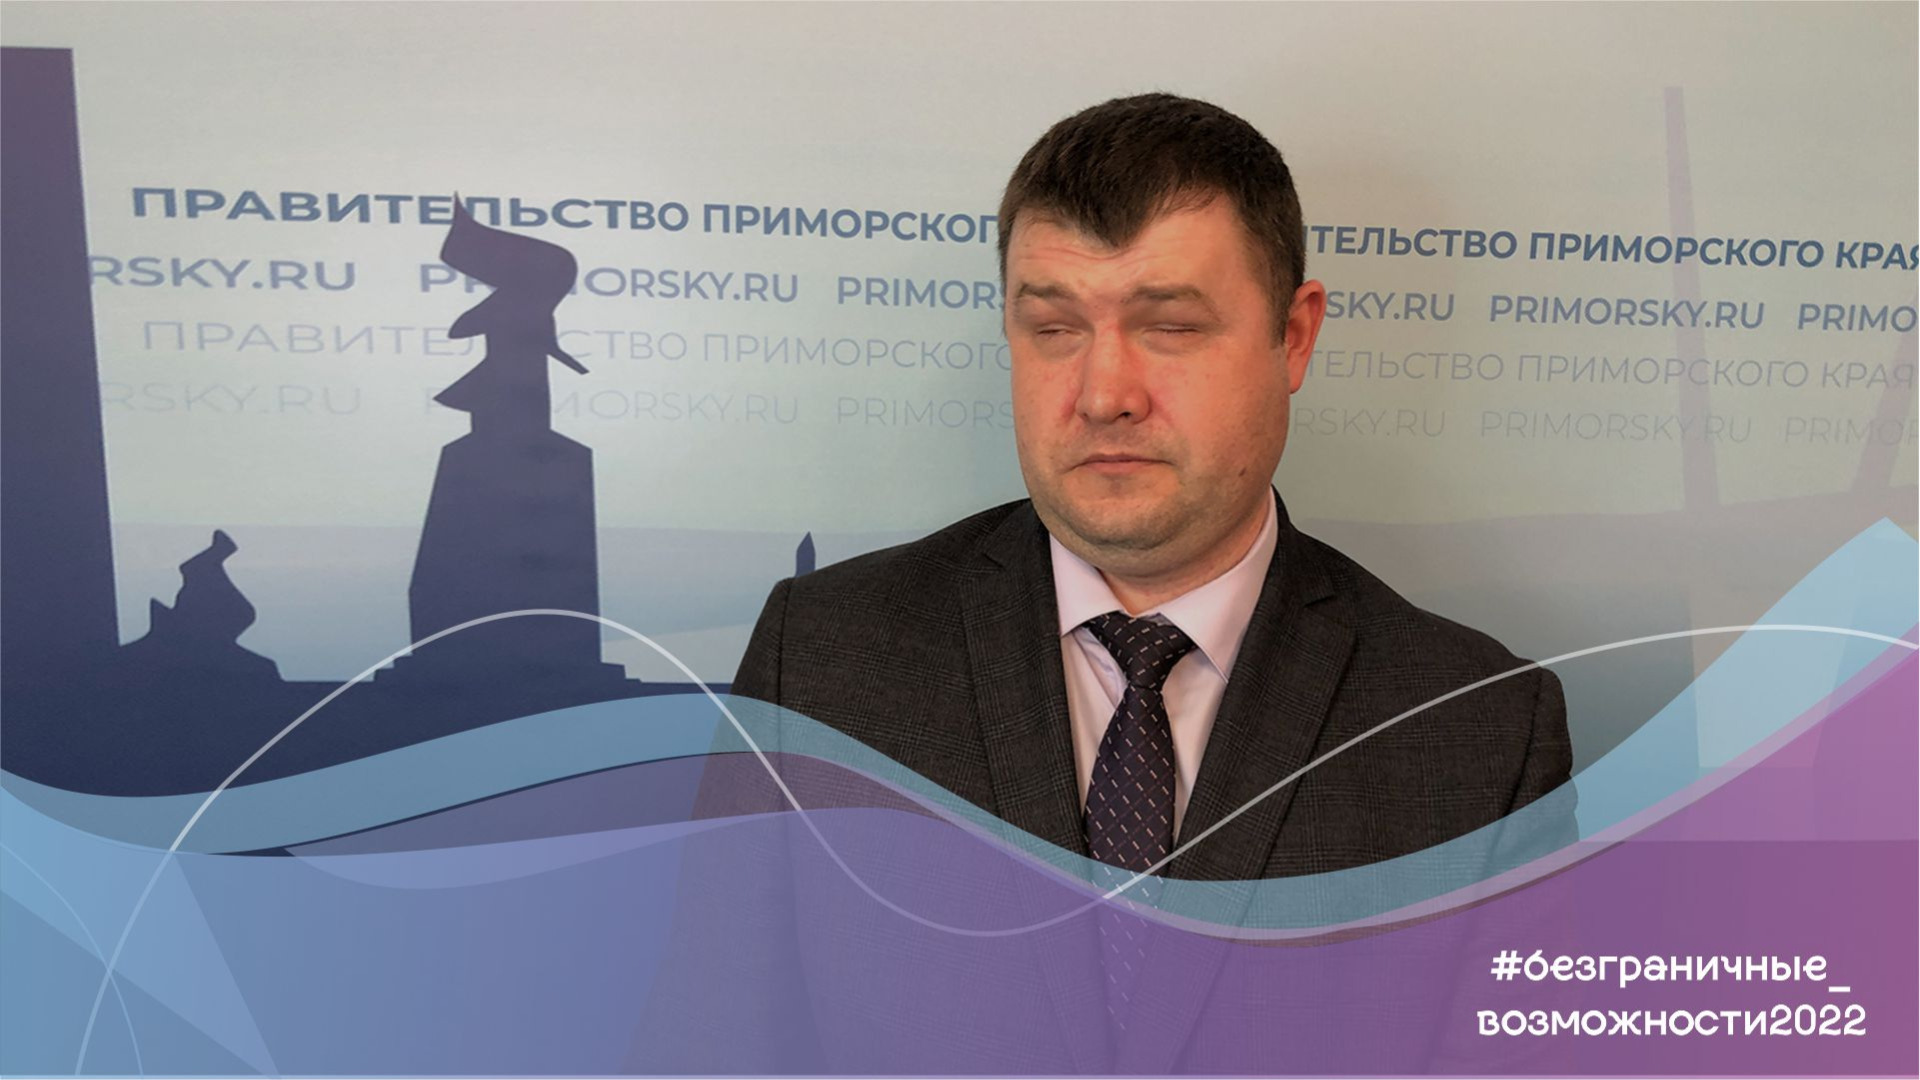 Незрячий адвокат из Приморского края видит законы насквозь